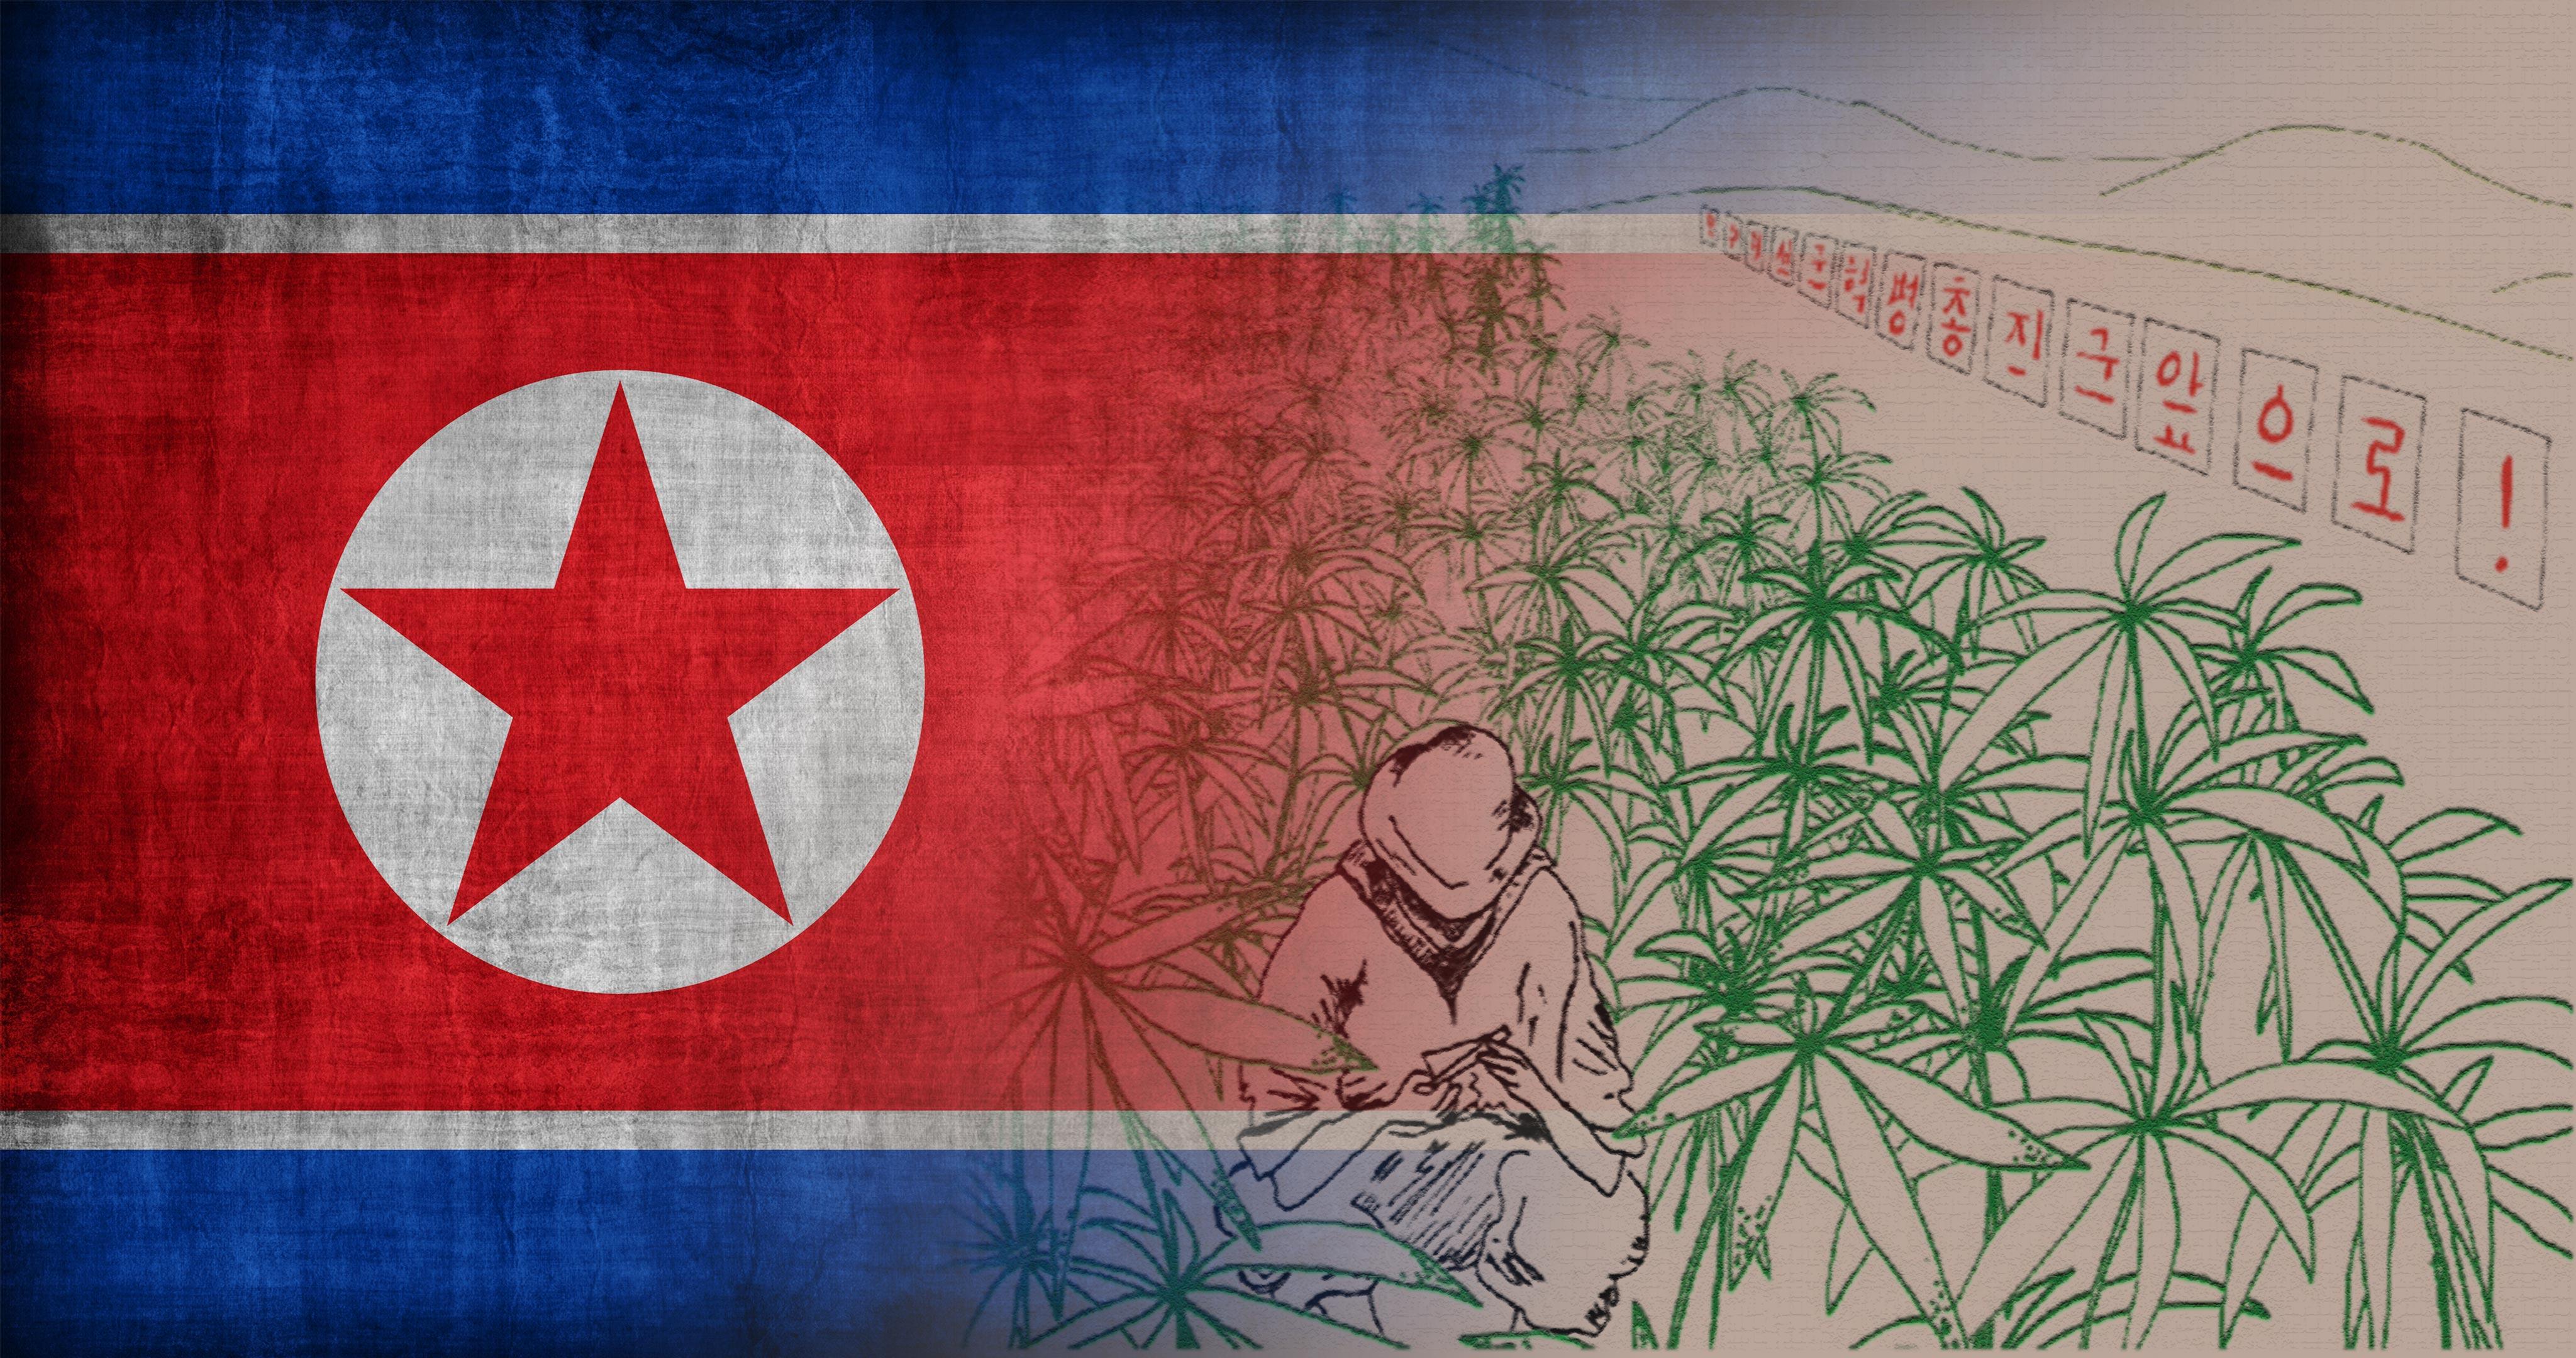 Подробная информация о "Как обстоит ситуация с коноплей в Северной Корее?"